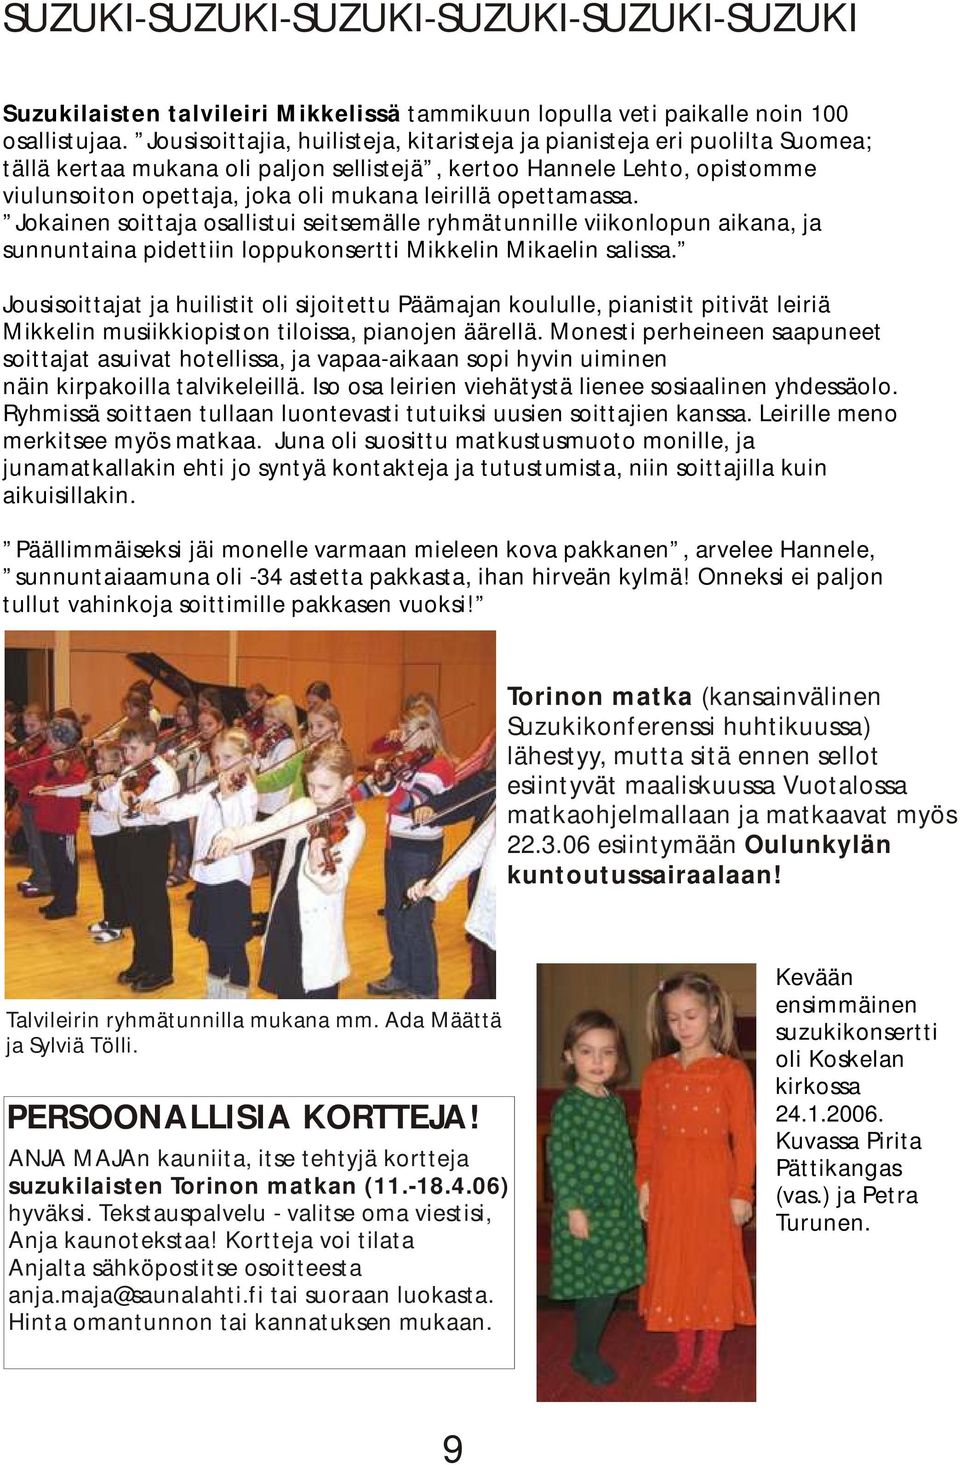 opettamassa. Jokainen soittaja osallistui seitsemälle ryhmätunnille viikonlopun aikana, ja sunnuntaina pidettiin loppukonsertti Mikkelin Mikaelin salissa.